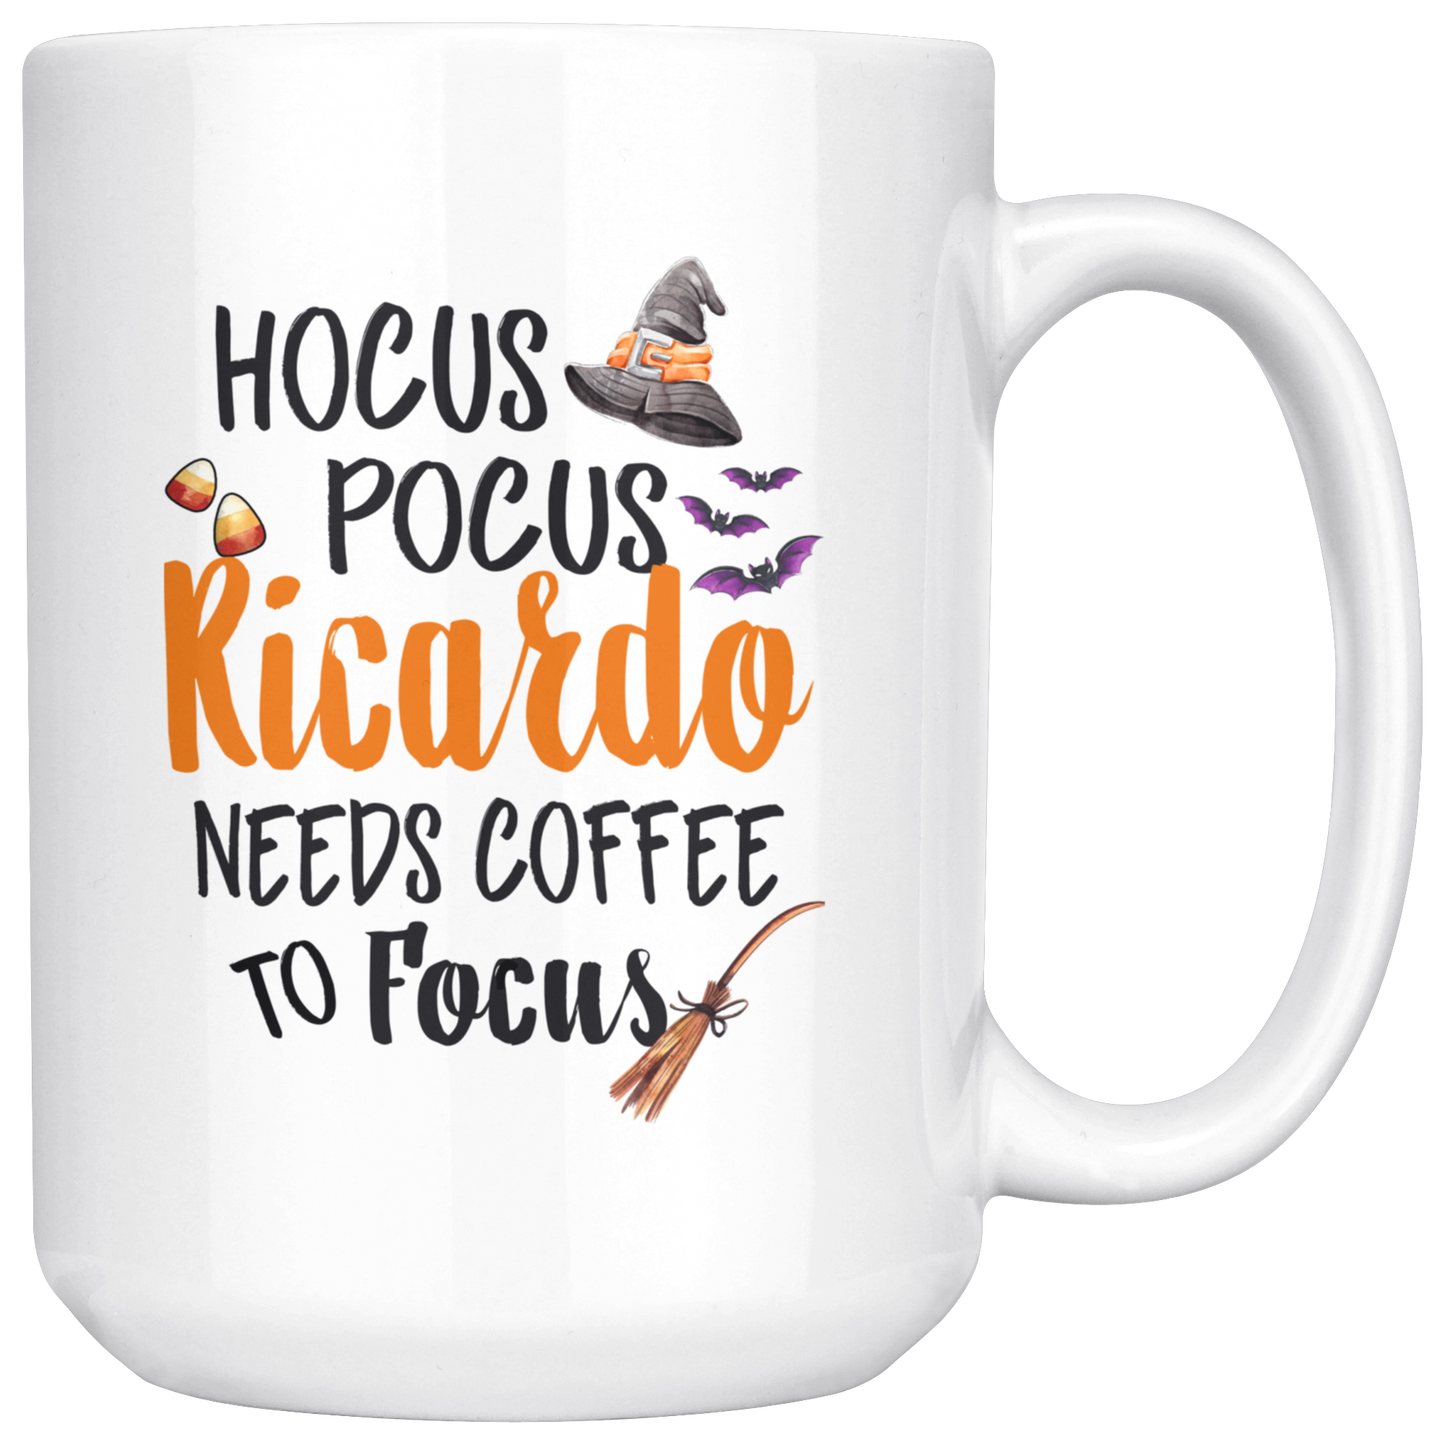 ND-20837742-sp-25659 - [ Ricardo | 1 | 1 ] (mug_15oz_white) Hocus Pocus Ricardo Needs Coffee To Focus - Halloween Coffe